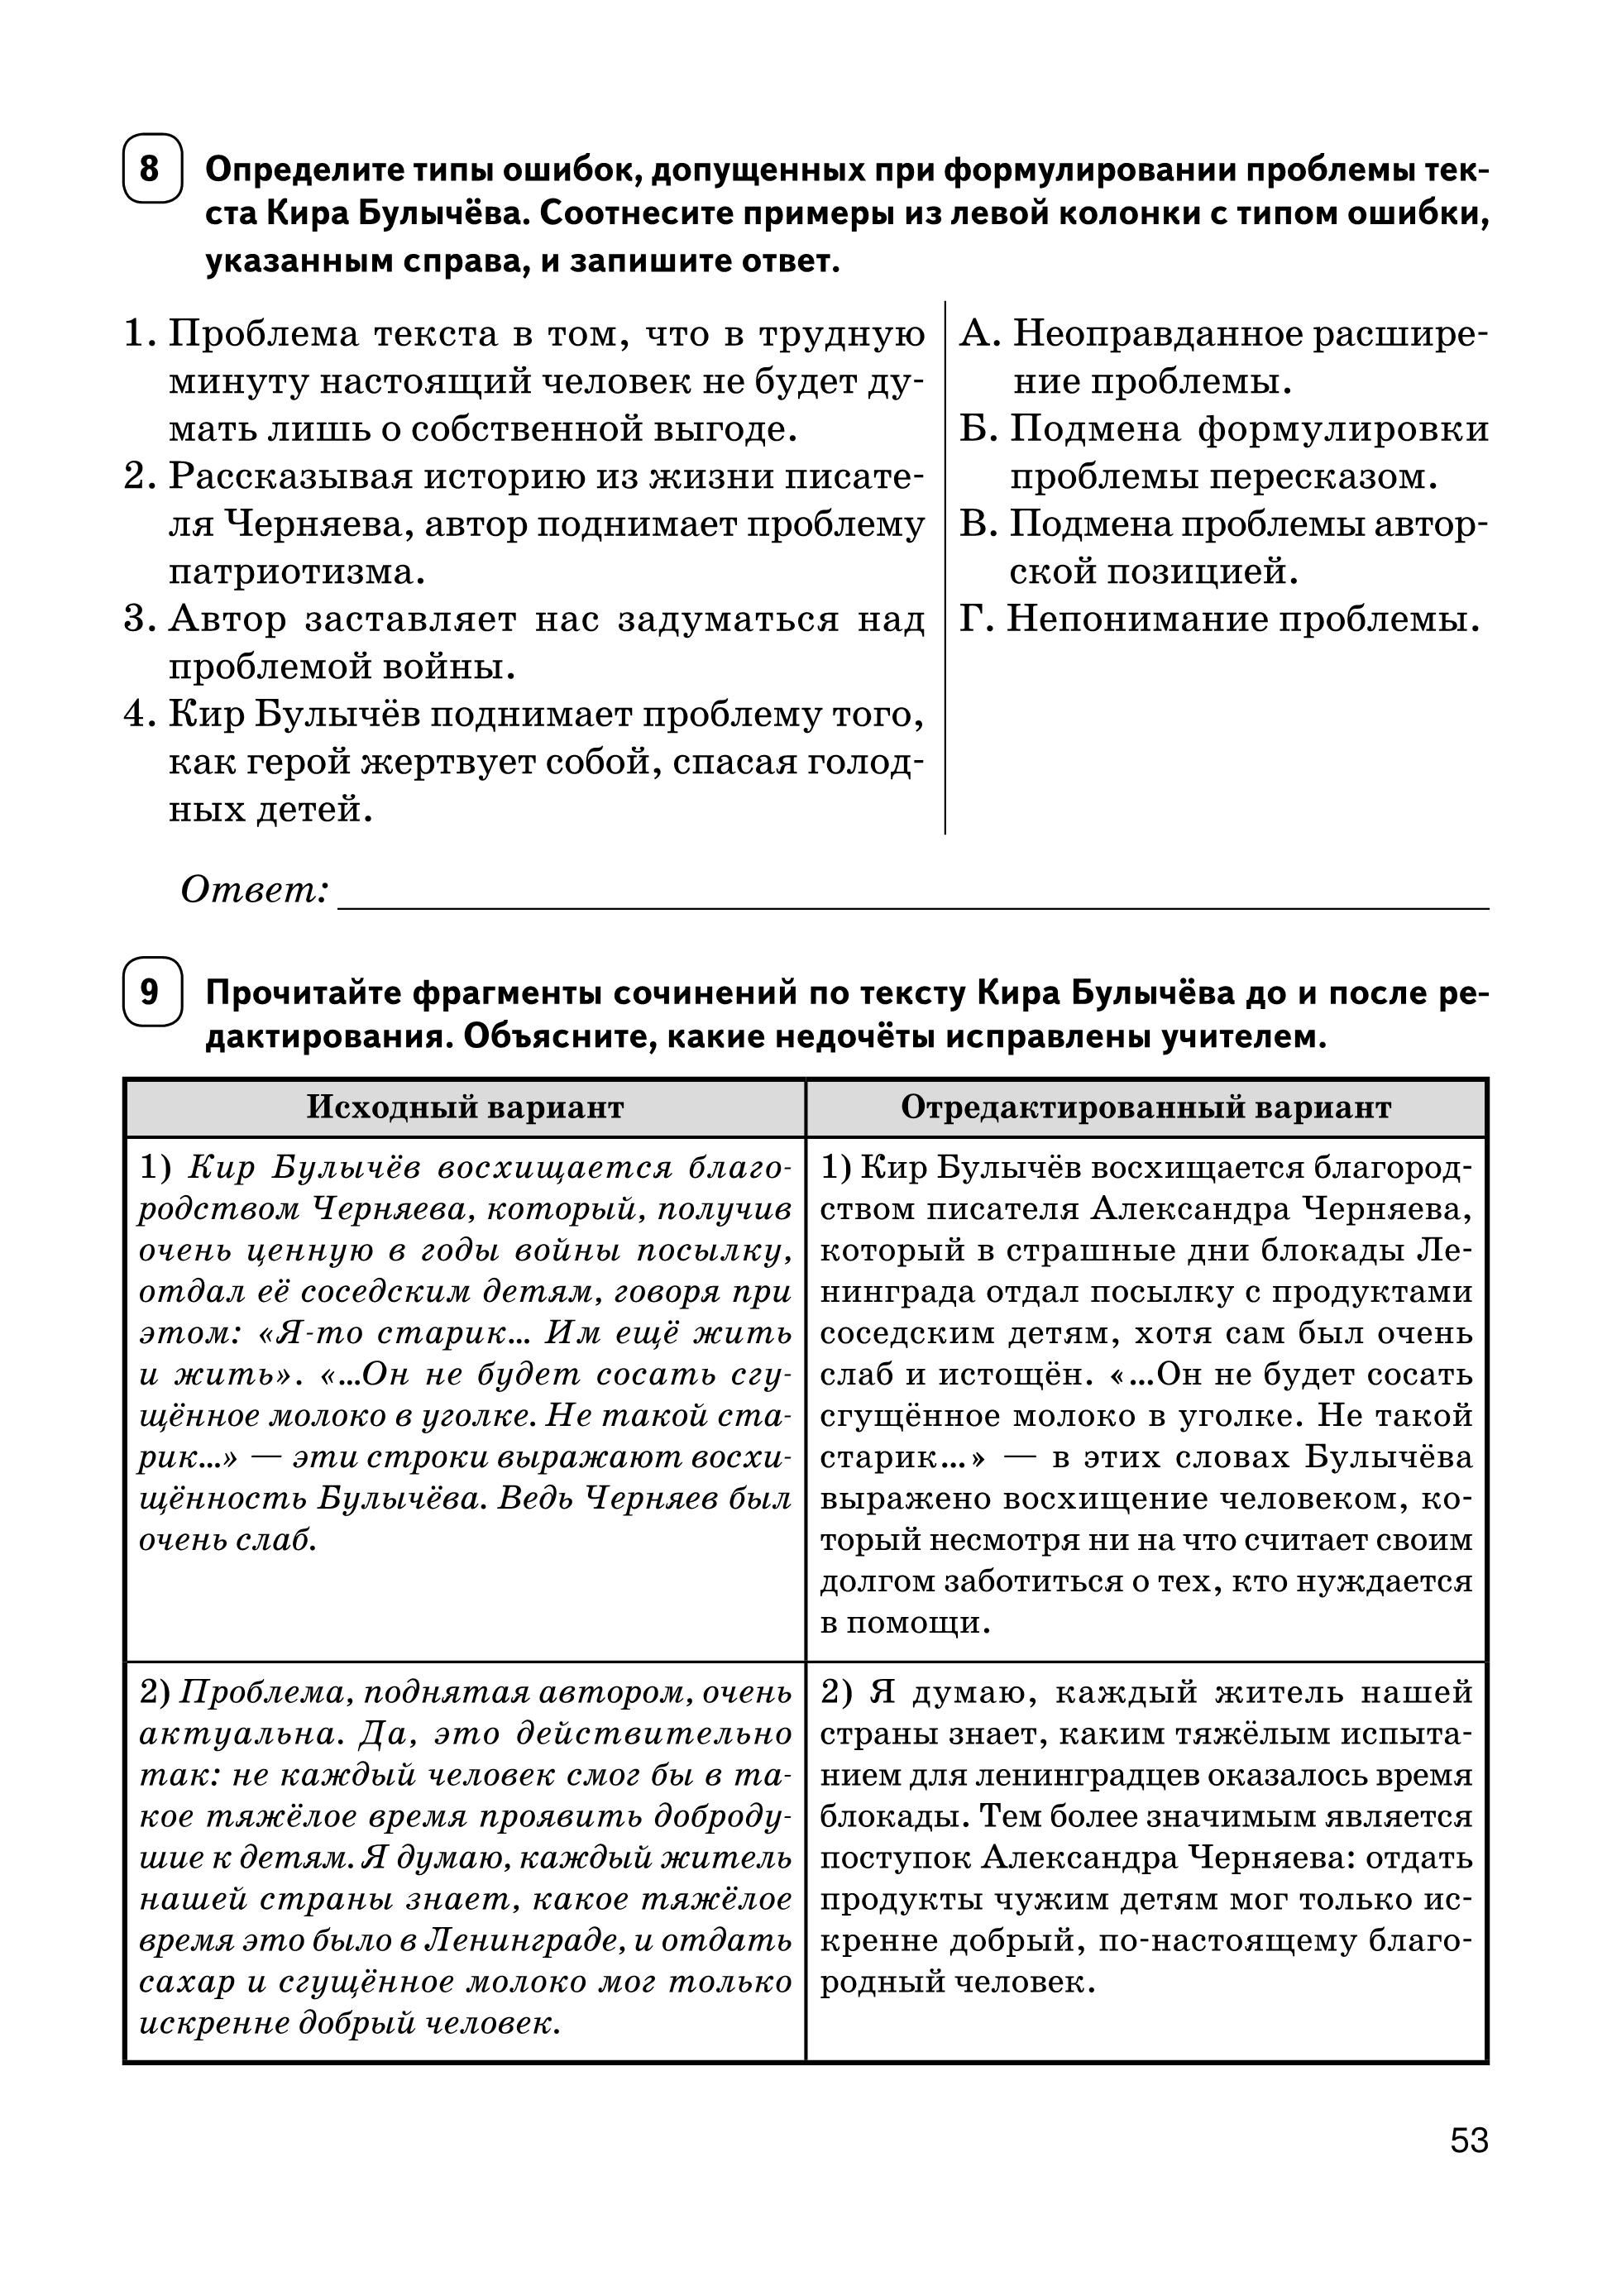 Русский язык. Сочинение на ЕГЭ. Курс интенсивной подготовки. 11-е издание